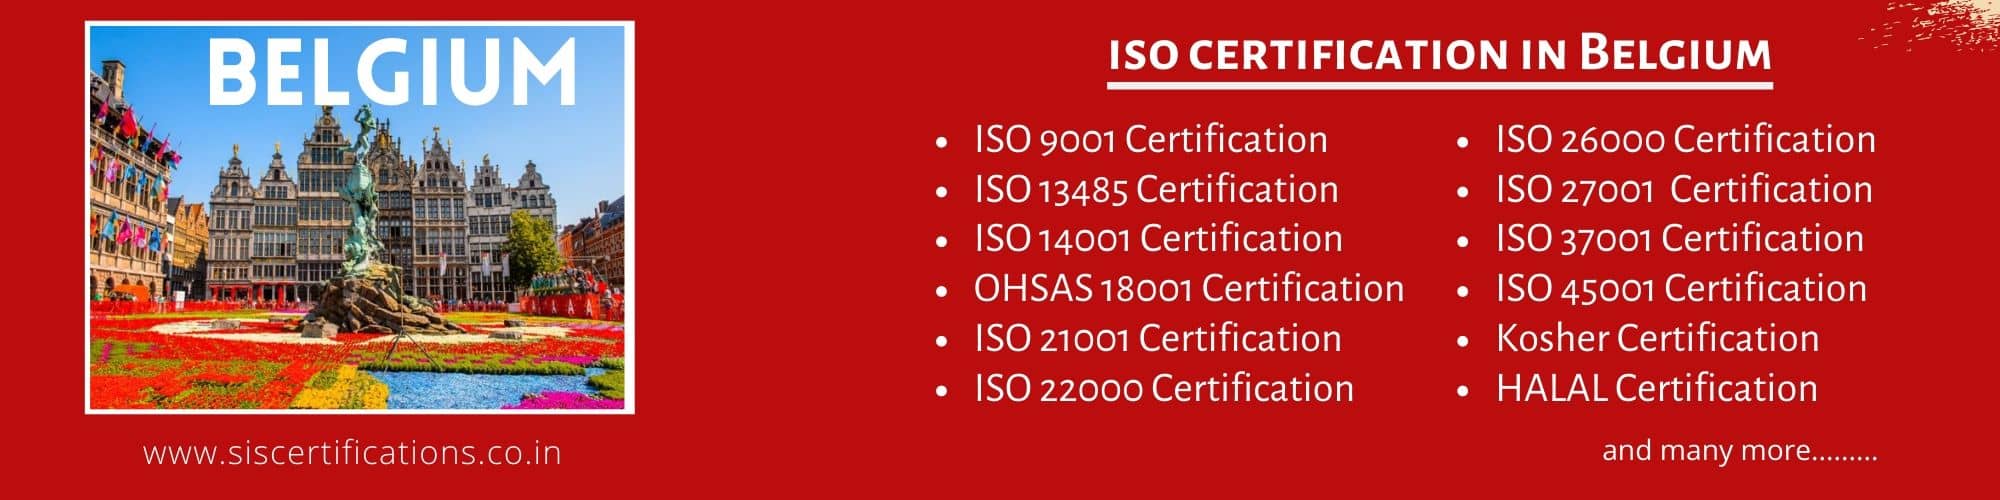 ISO Certification in Belgium